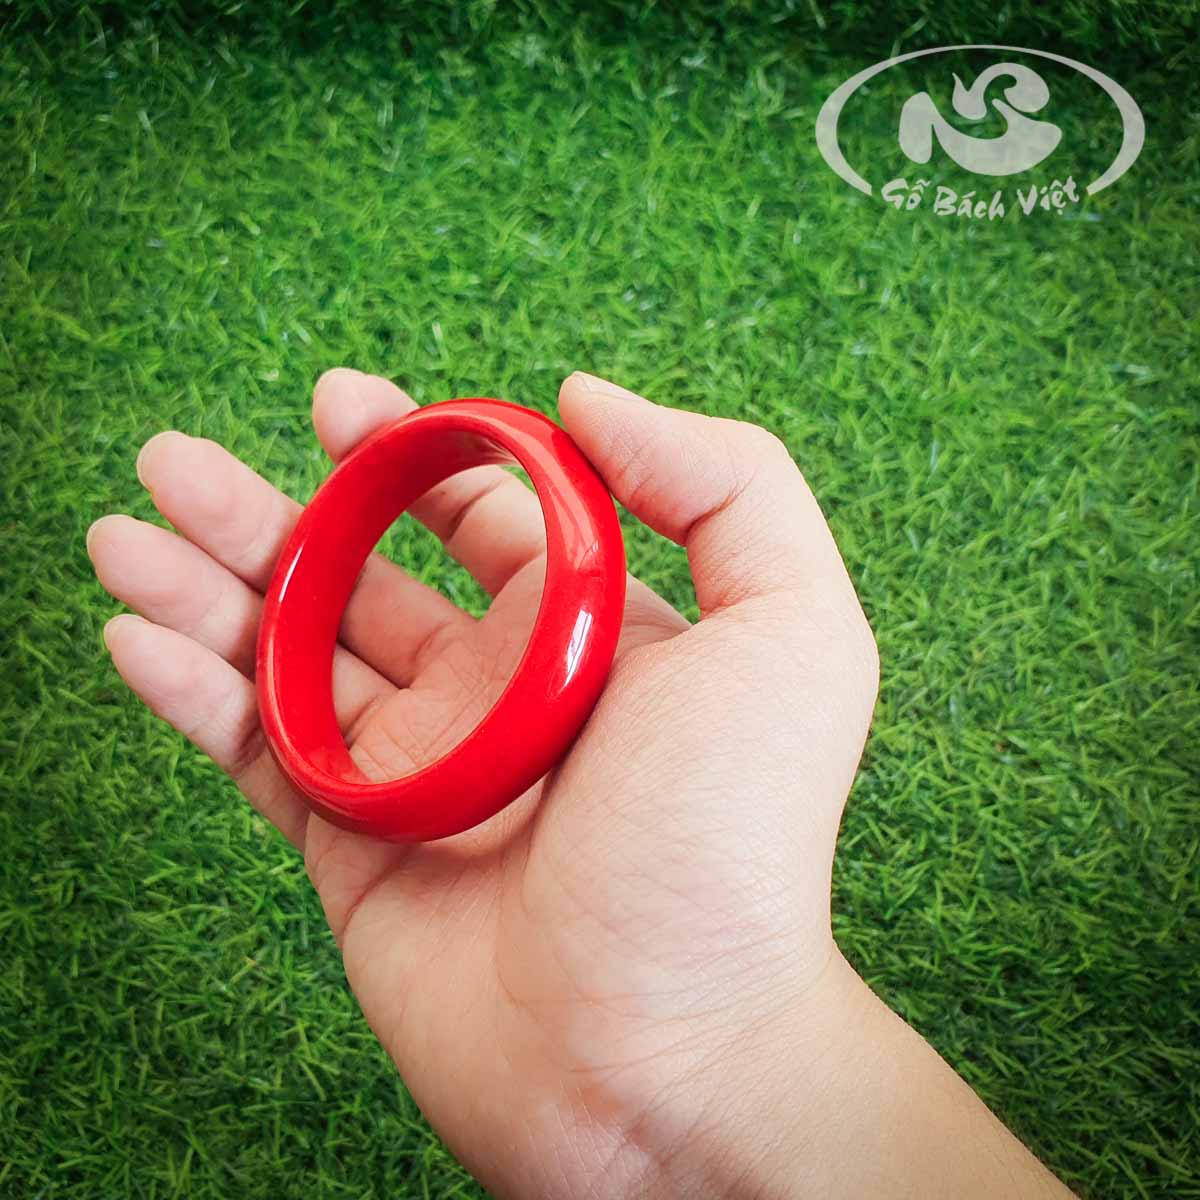 Dạng liền khối với vẻ đẹp của San hô đỏ giúp chiếc vòng giống như được tạo ra từ ngọc quý